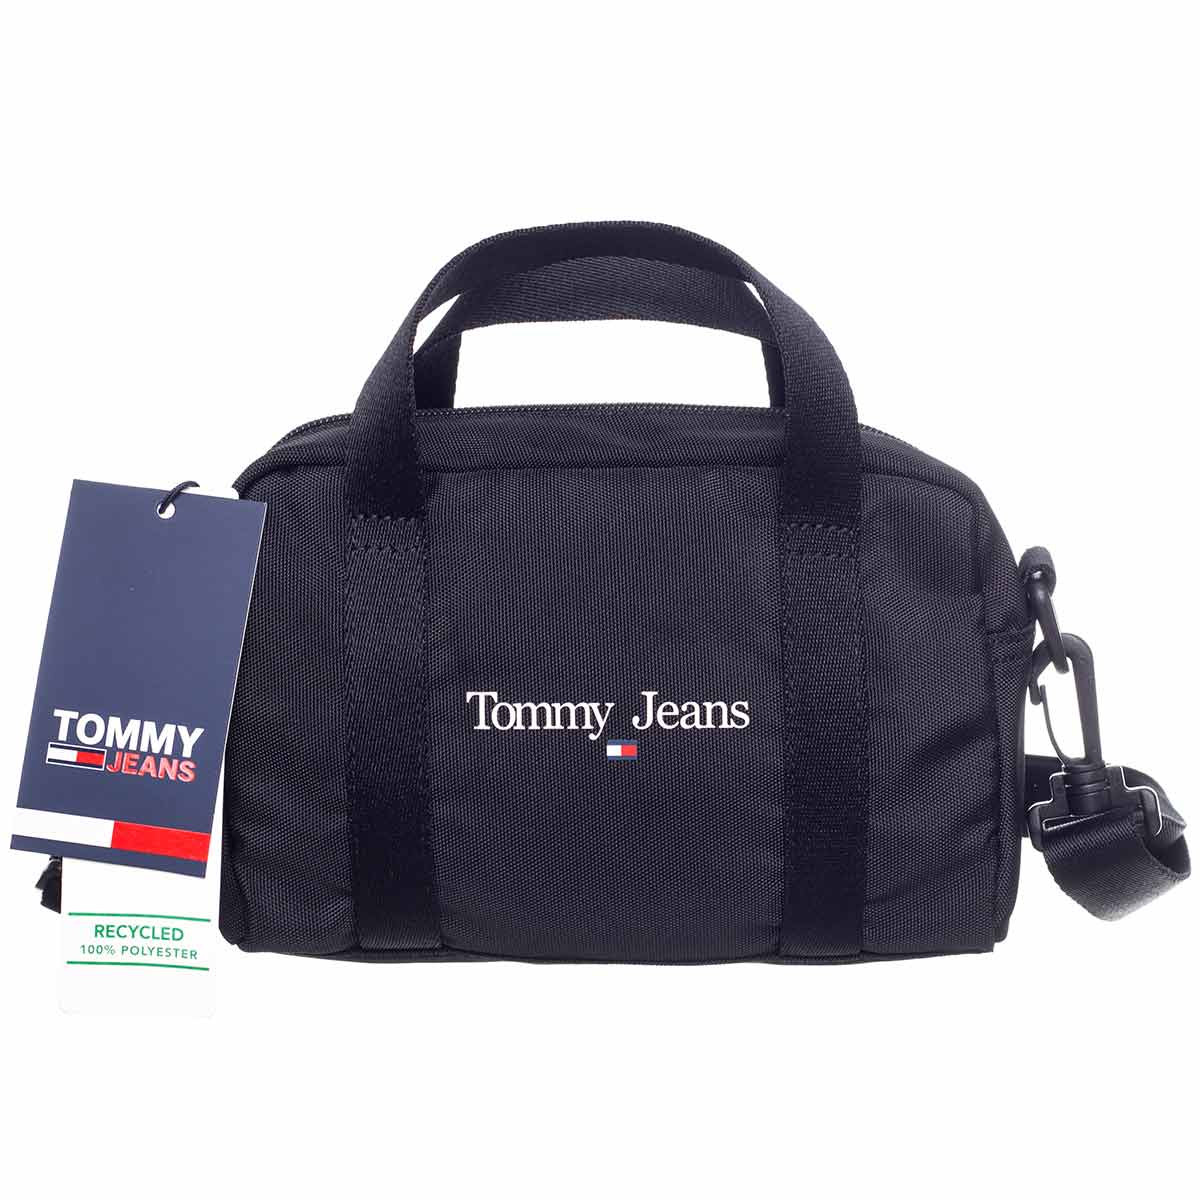 Taška Tommy Hilfiger Jeans 8720641981231 Black UNI